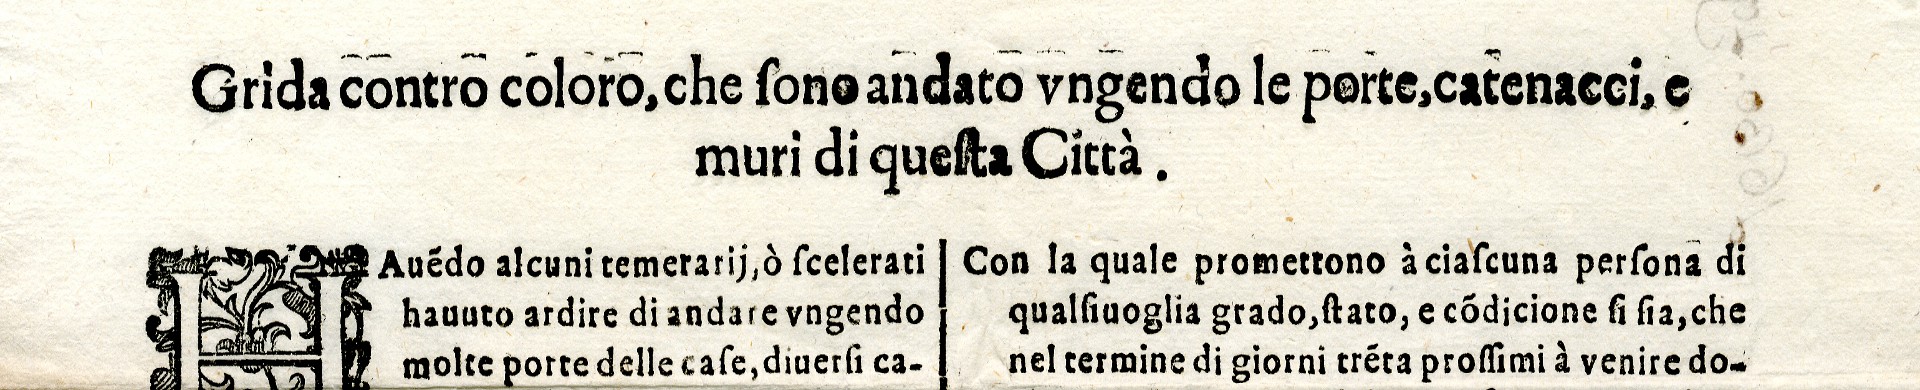 L'Archivio storico racconta - La peste dei Promessi Sposi a Pavia